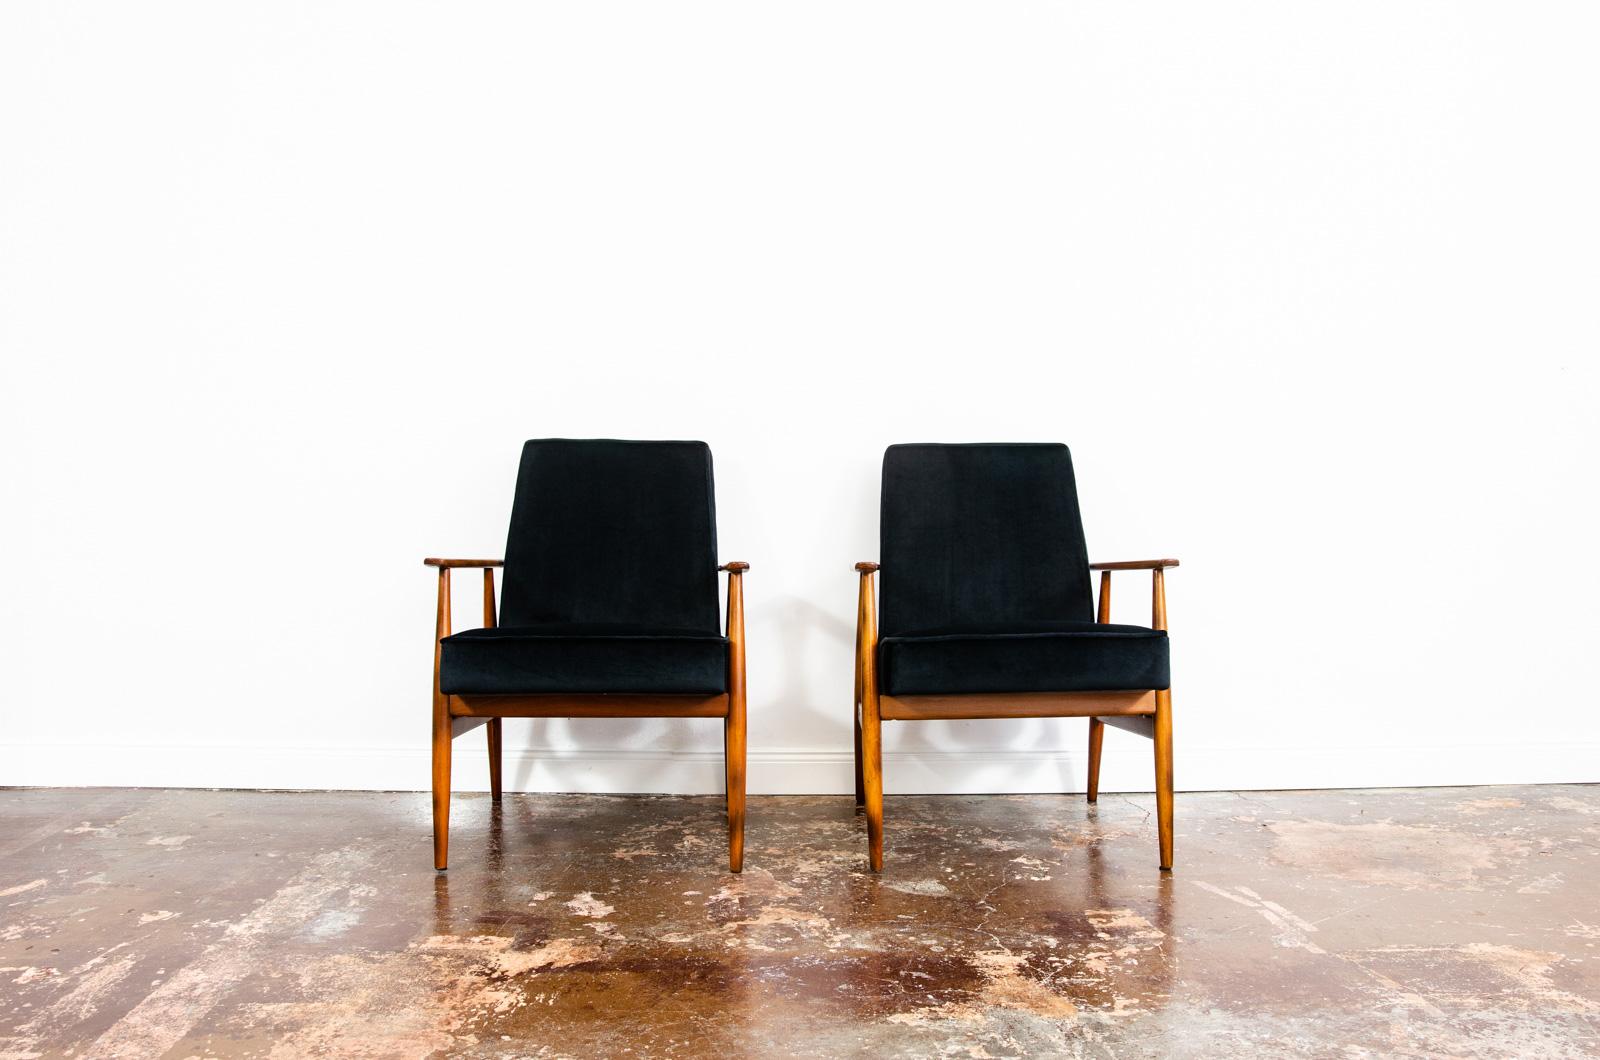 Paar Sessel aus der Mitte des Jahrhunderts, Typ 300-190, entworfen von H. Lis, hergestellt in Polen, 1960er Jahre.
Neu gepolstert mit schwarzem, weichem Stoff. 
Die Massivholzrahmen wurden vollständig restauriert und aufgearbeitet.